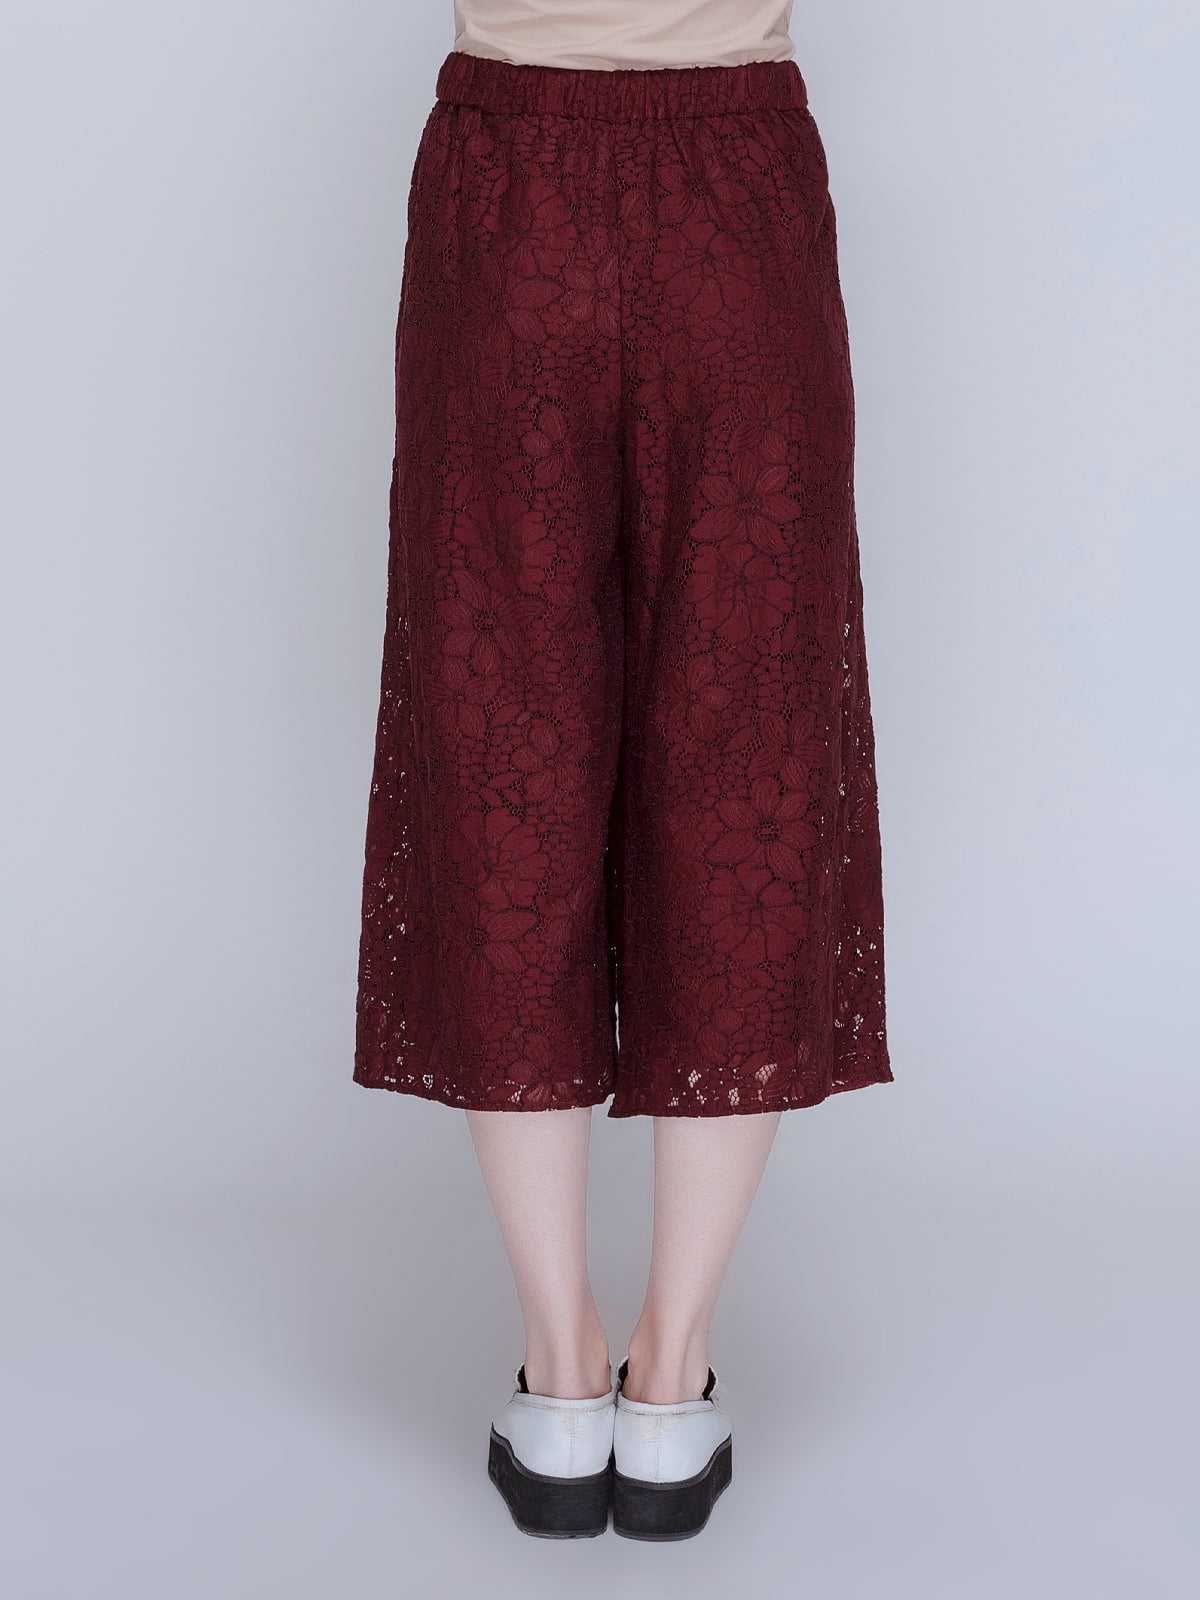 Кюлоты широкие брюки Zara бордовые кружевные ажурные l-xl